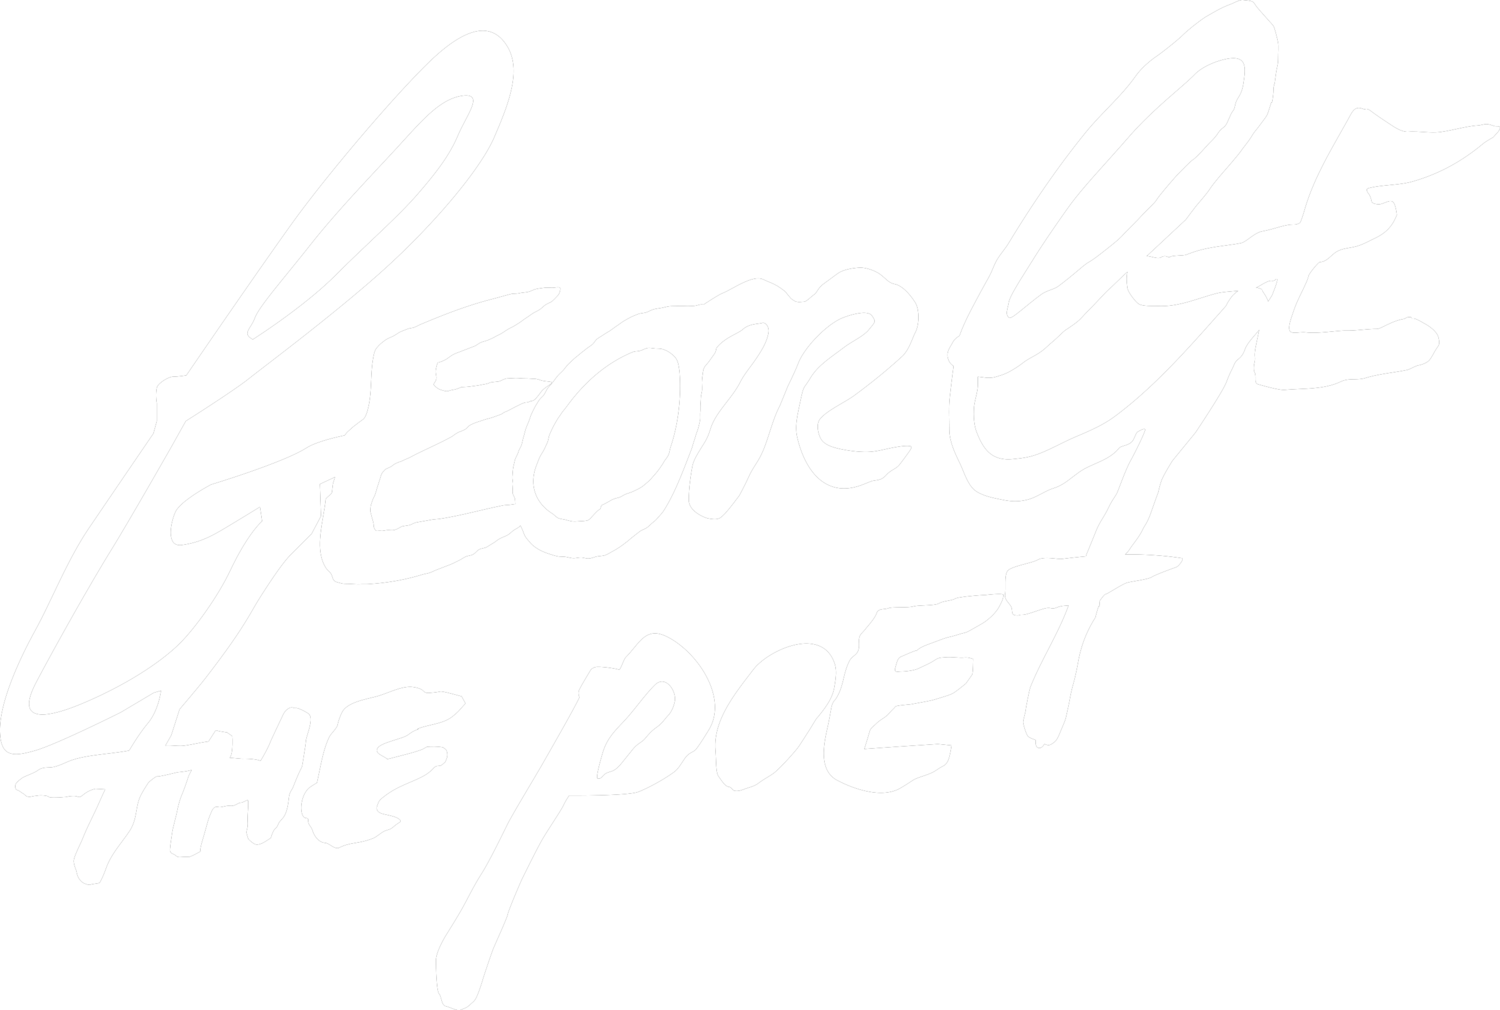 George The Poet